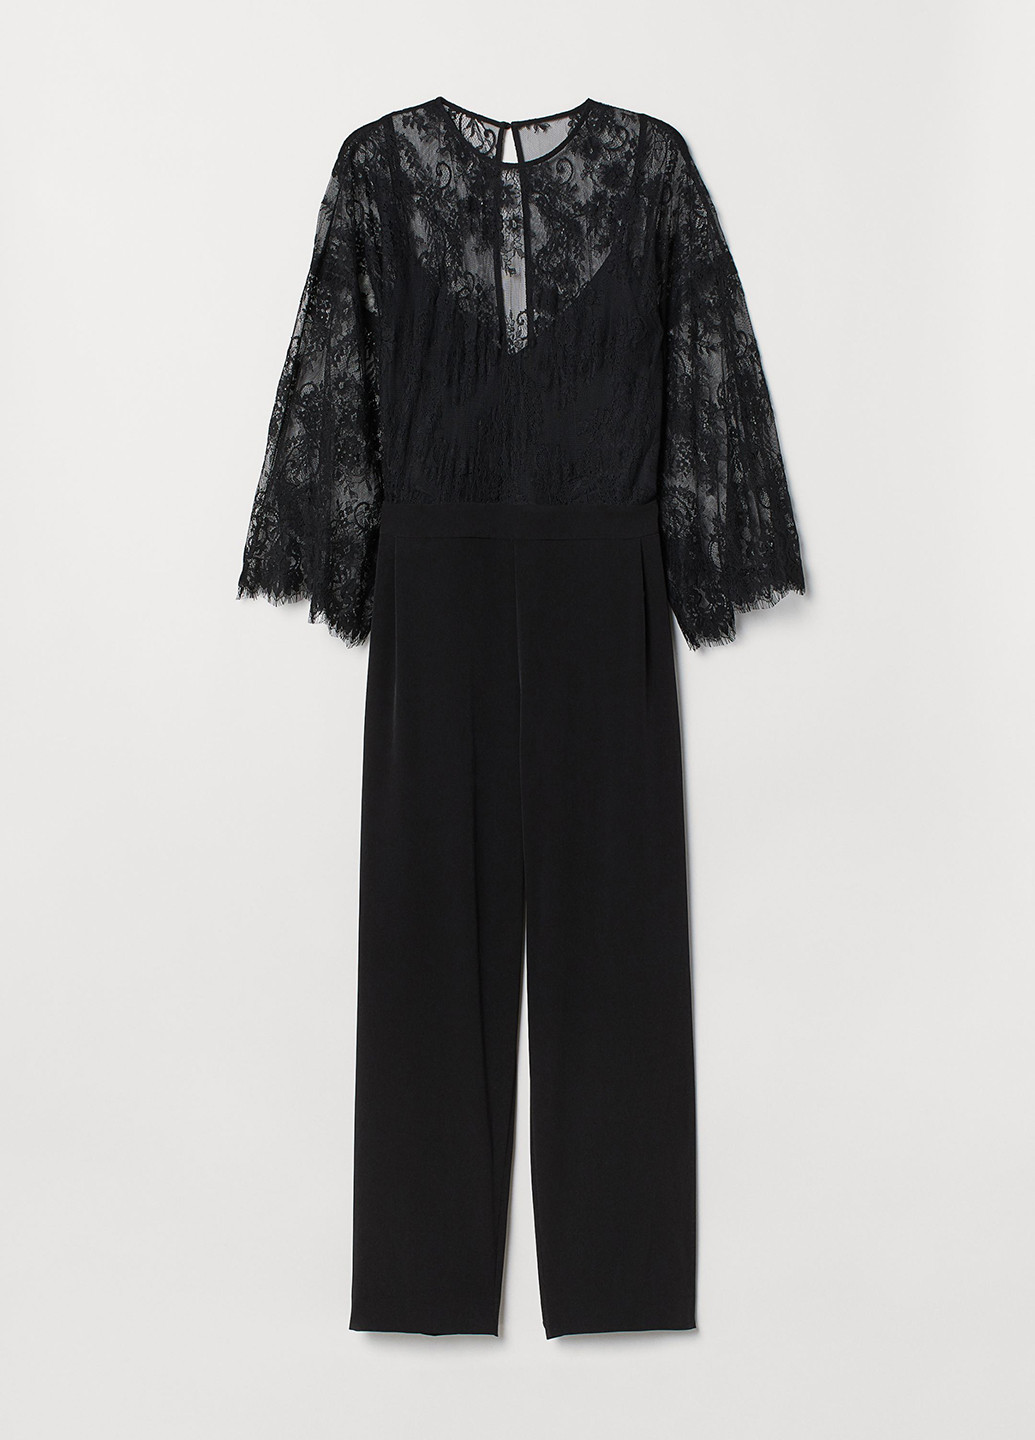 Комбинезон H&M комбинезон-брюки однотонный чёрный кэжуал полиэстер, гипюр